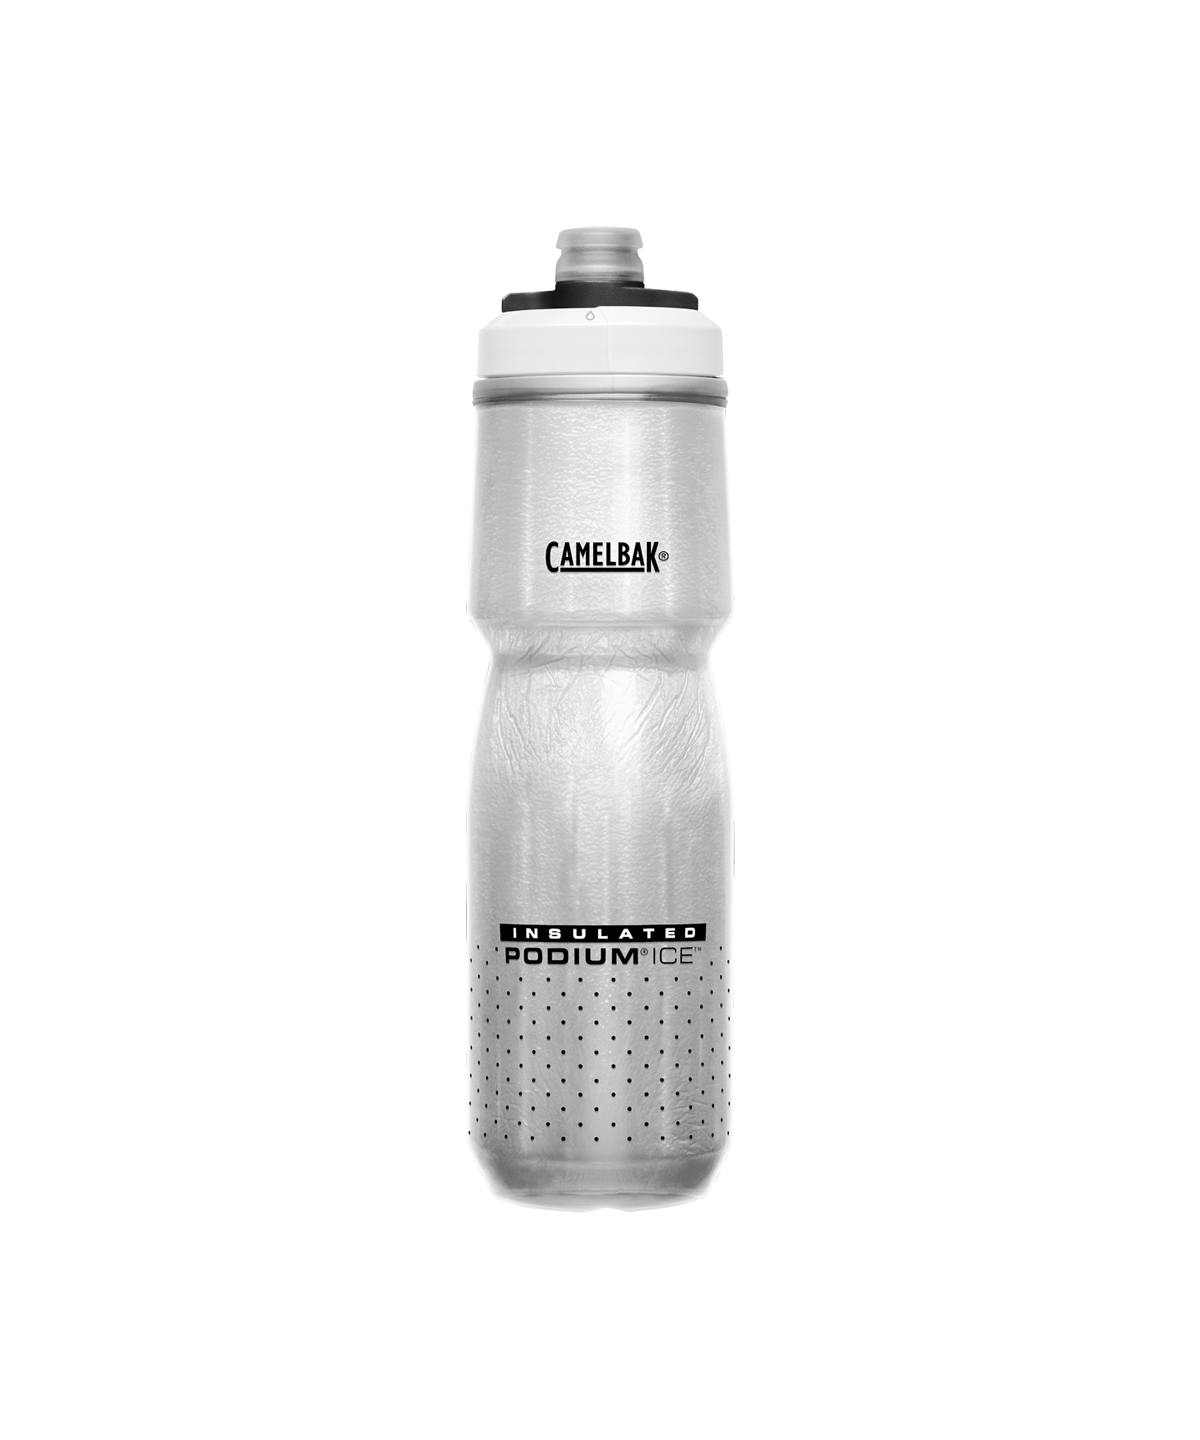 Camelbak Podium Ice Insulated Water Bottle 21oz White 